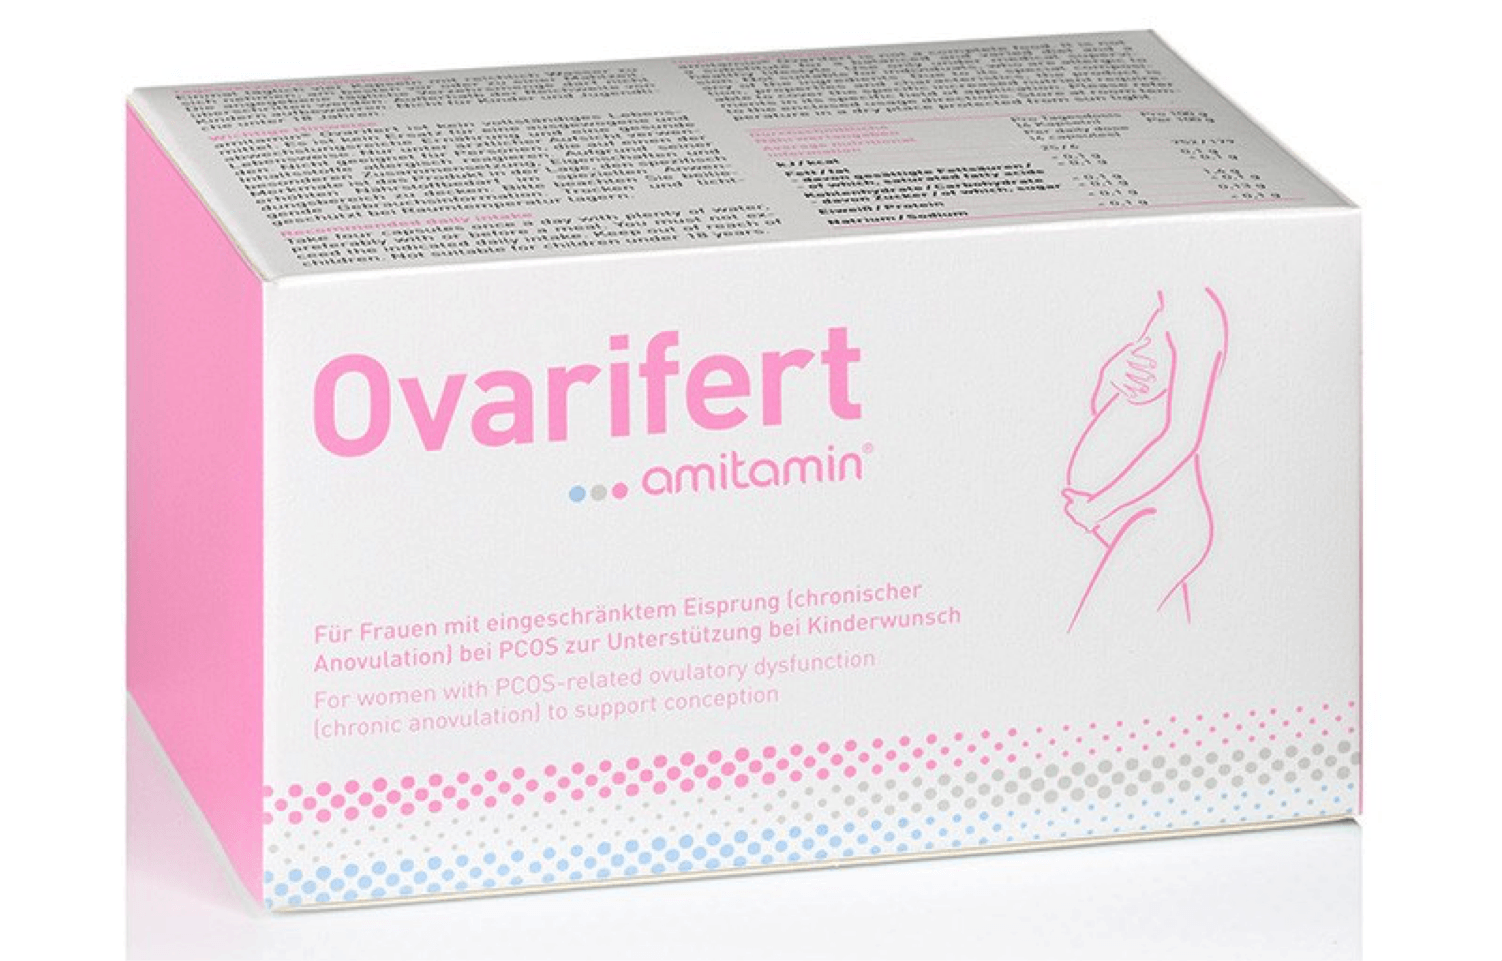 ovarifert da amitaminico comprende molti nutrienti che aiutano con la sindrome dell'ovaio policistico SOP